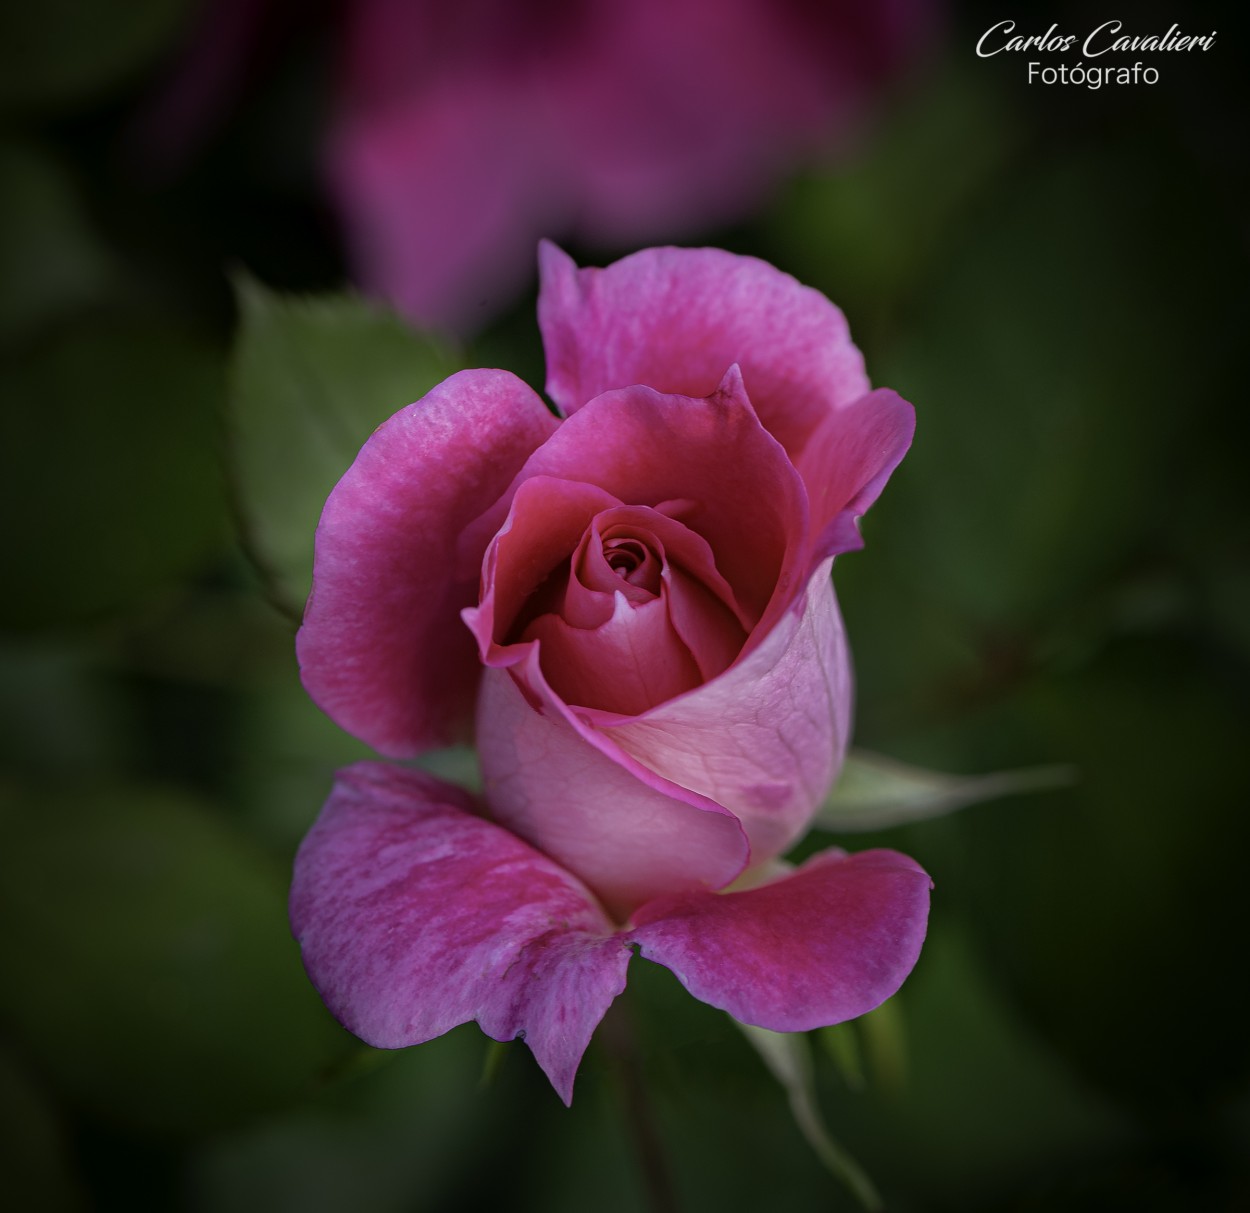 "La mas rosada de mi jardn..." de Carlos Cavalieri